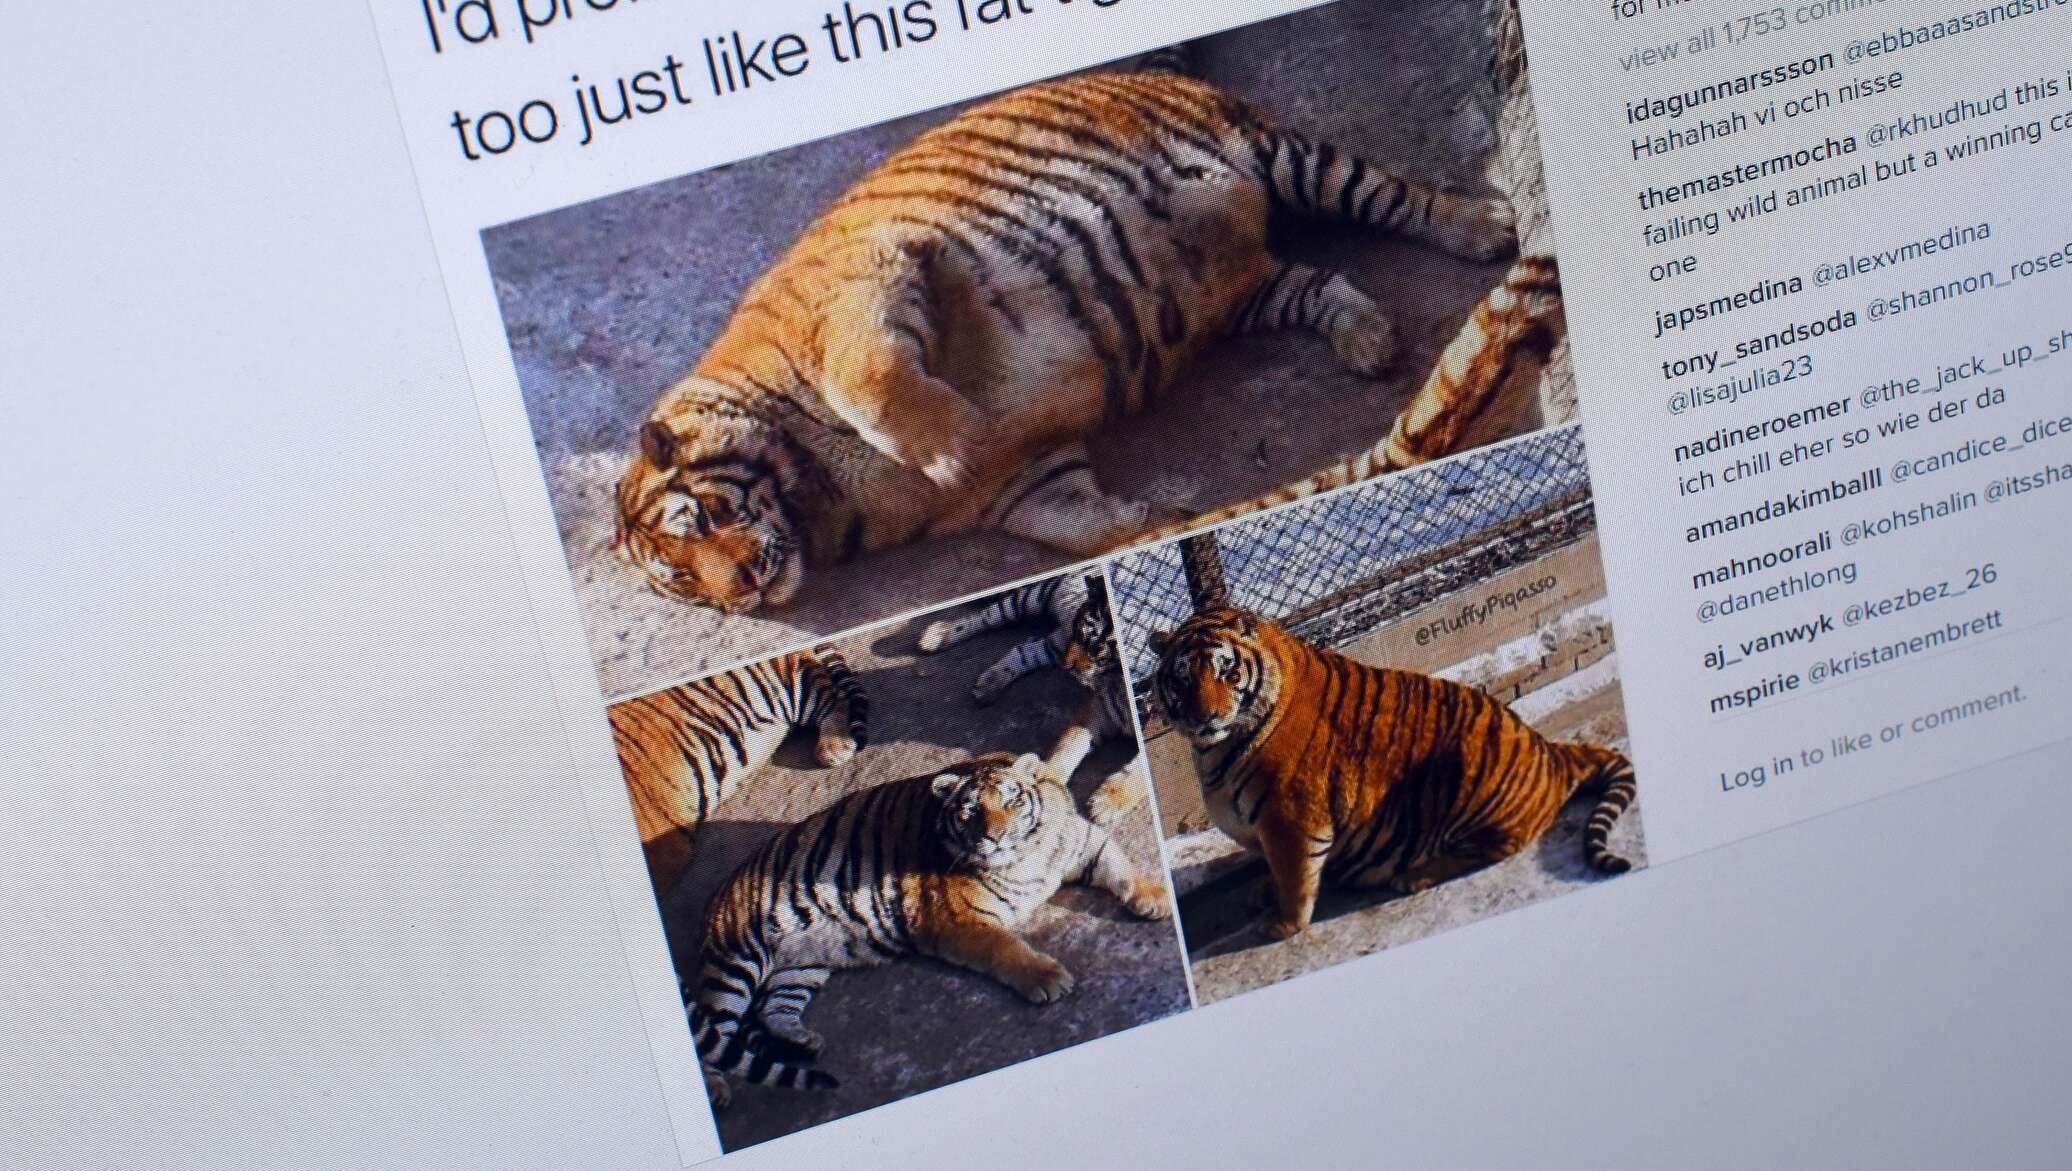 Толстые тигры в китайском зоопарке